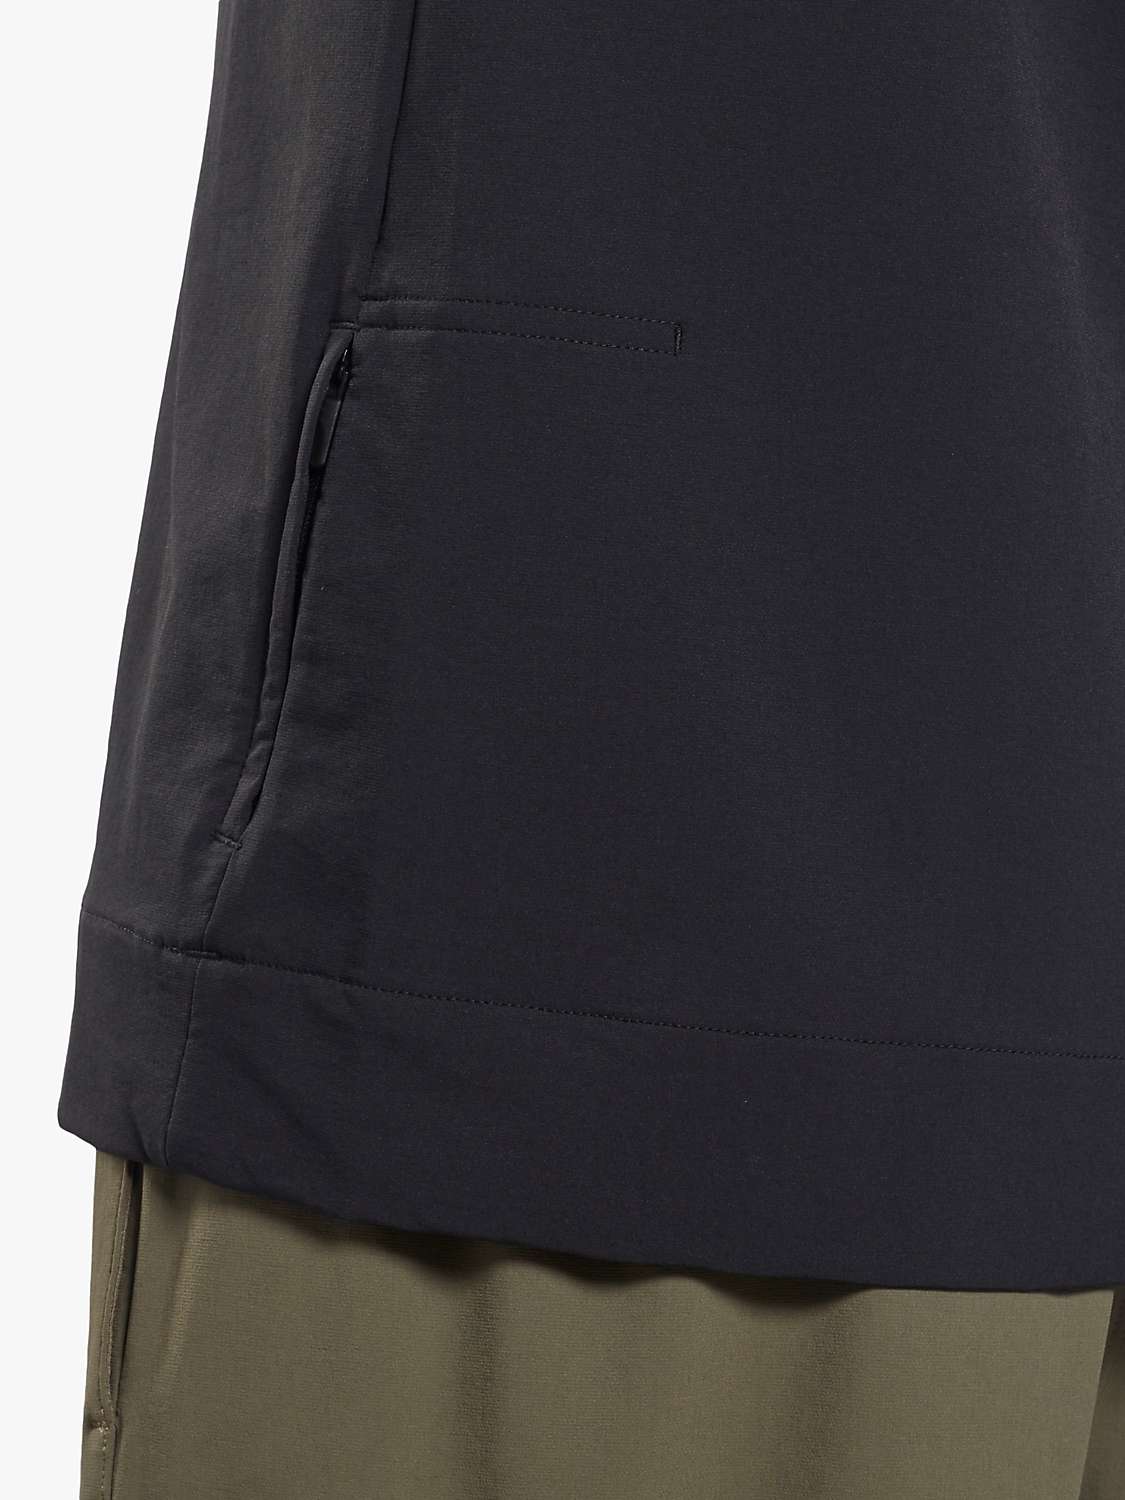 Buy Reebok Performance Woven Quarter Zip Sweatshirt Online at johnlewis.com